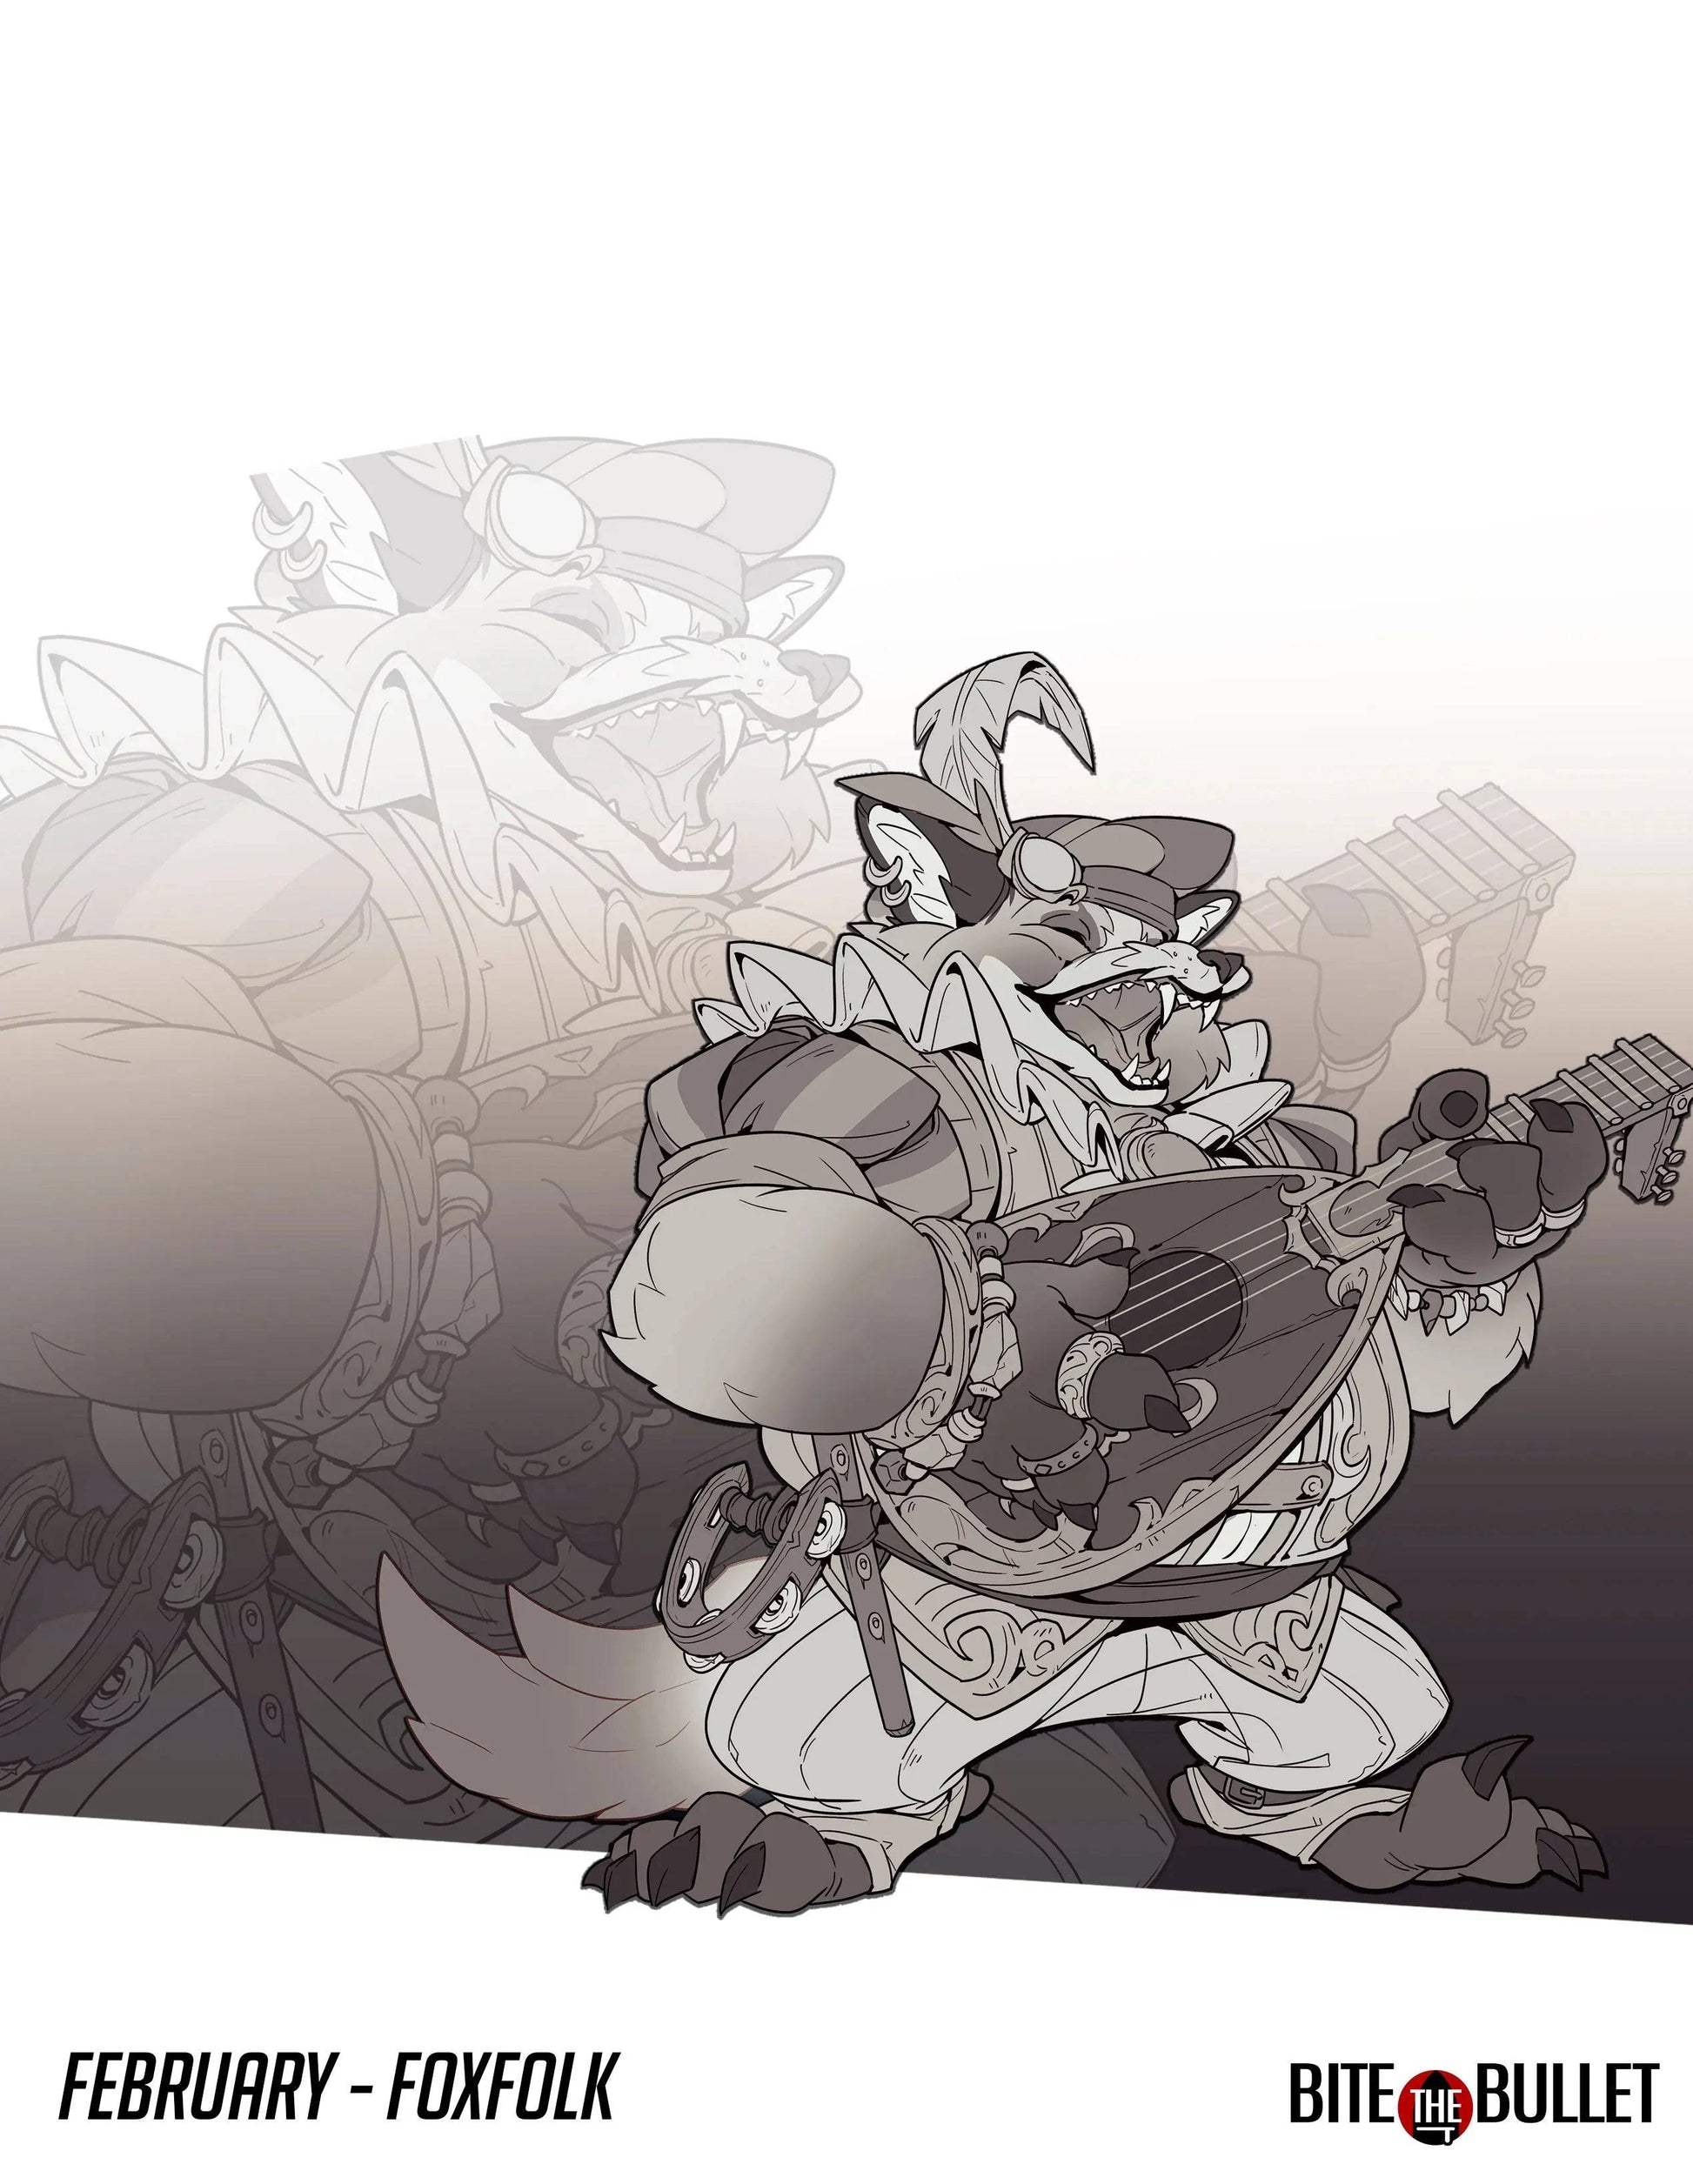 Foxfolk Bard Chubby Singer | D&D Miniature TTRPG Character | Bite the Bullet - Tattles Told 3D